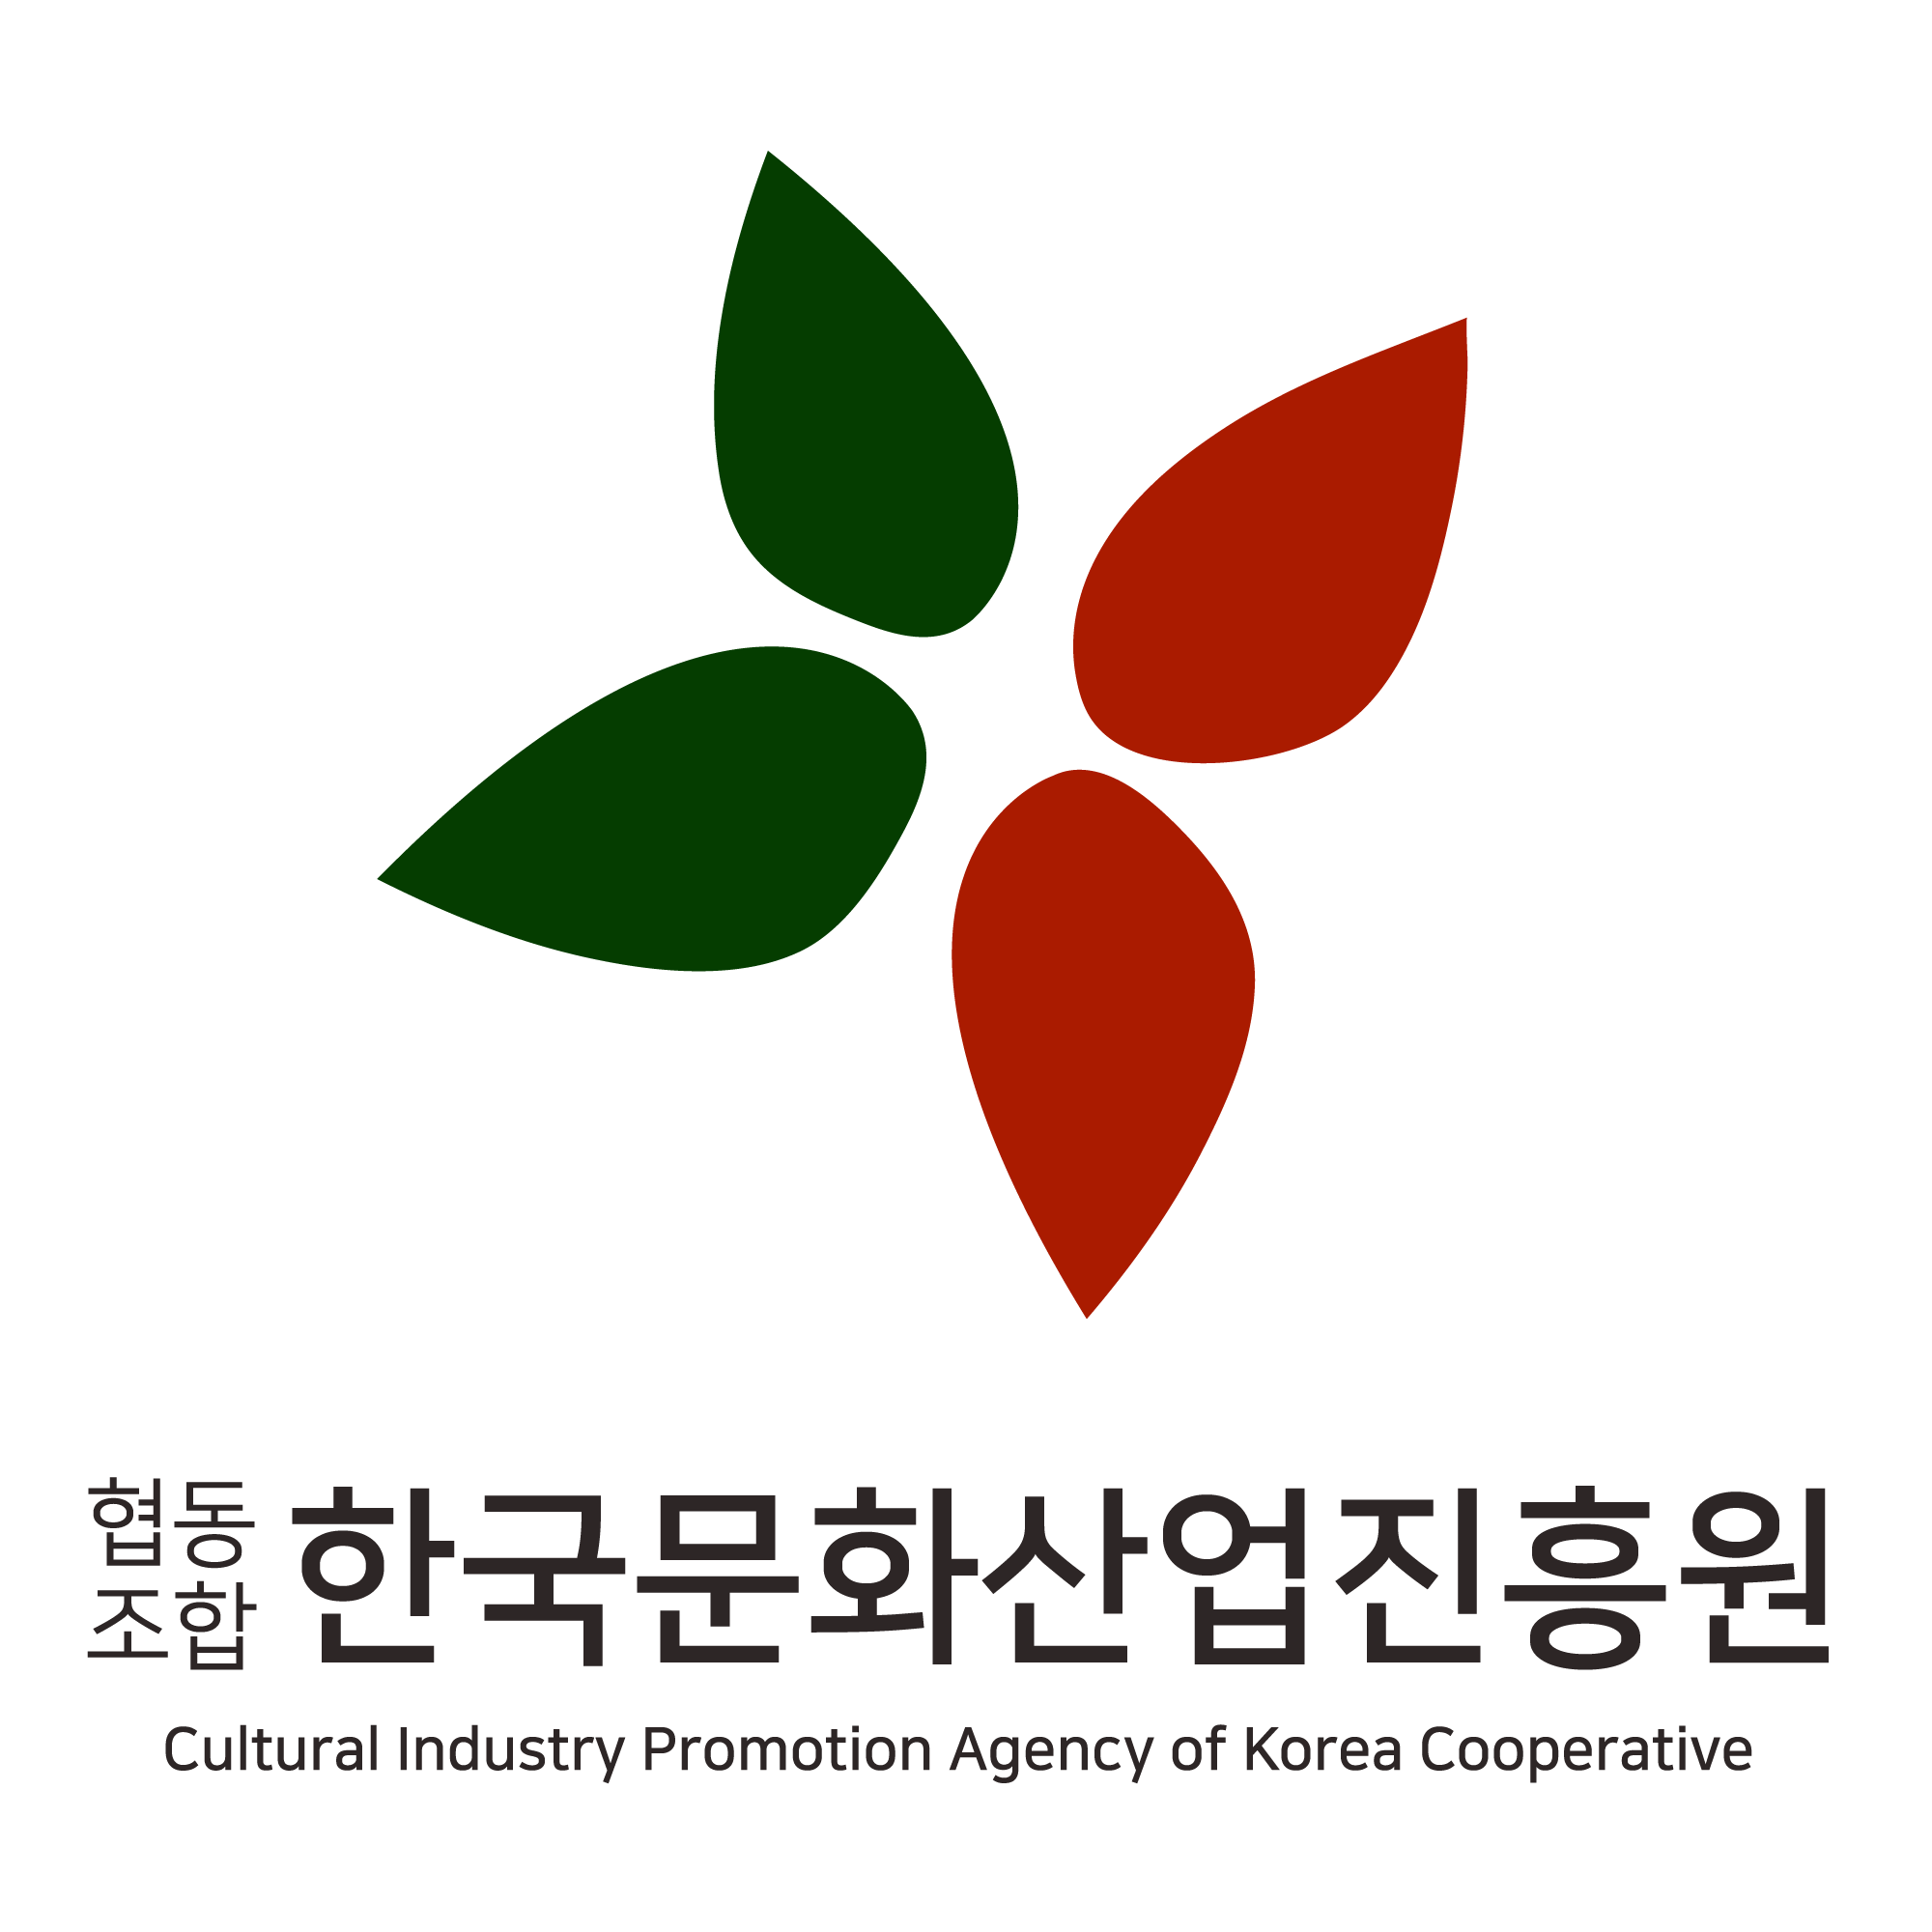 Korea Culture Industrial Promotion Co.